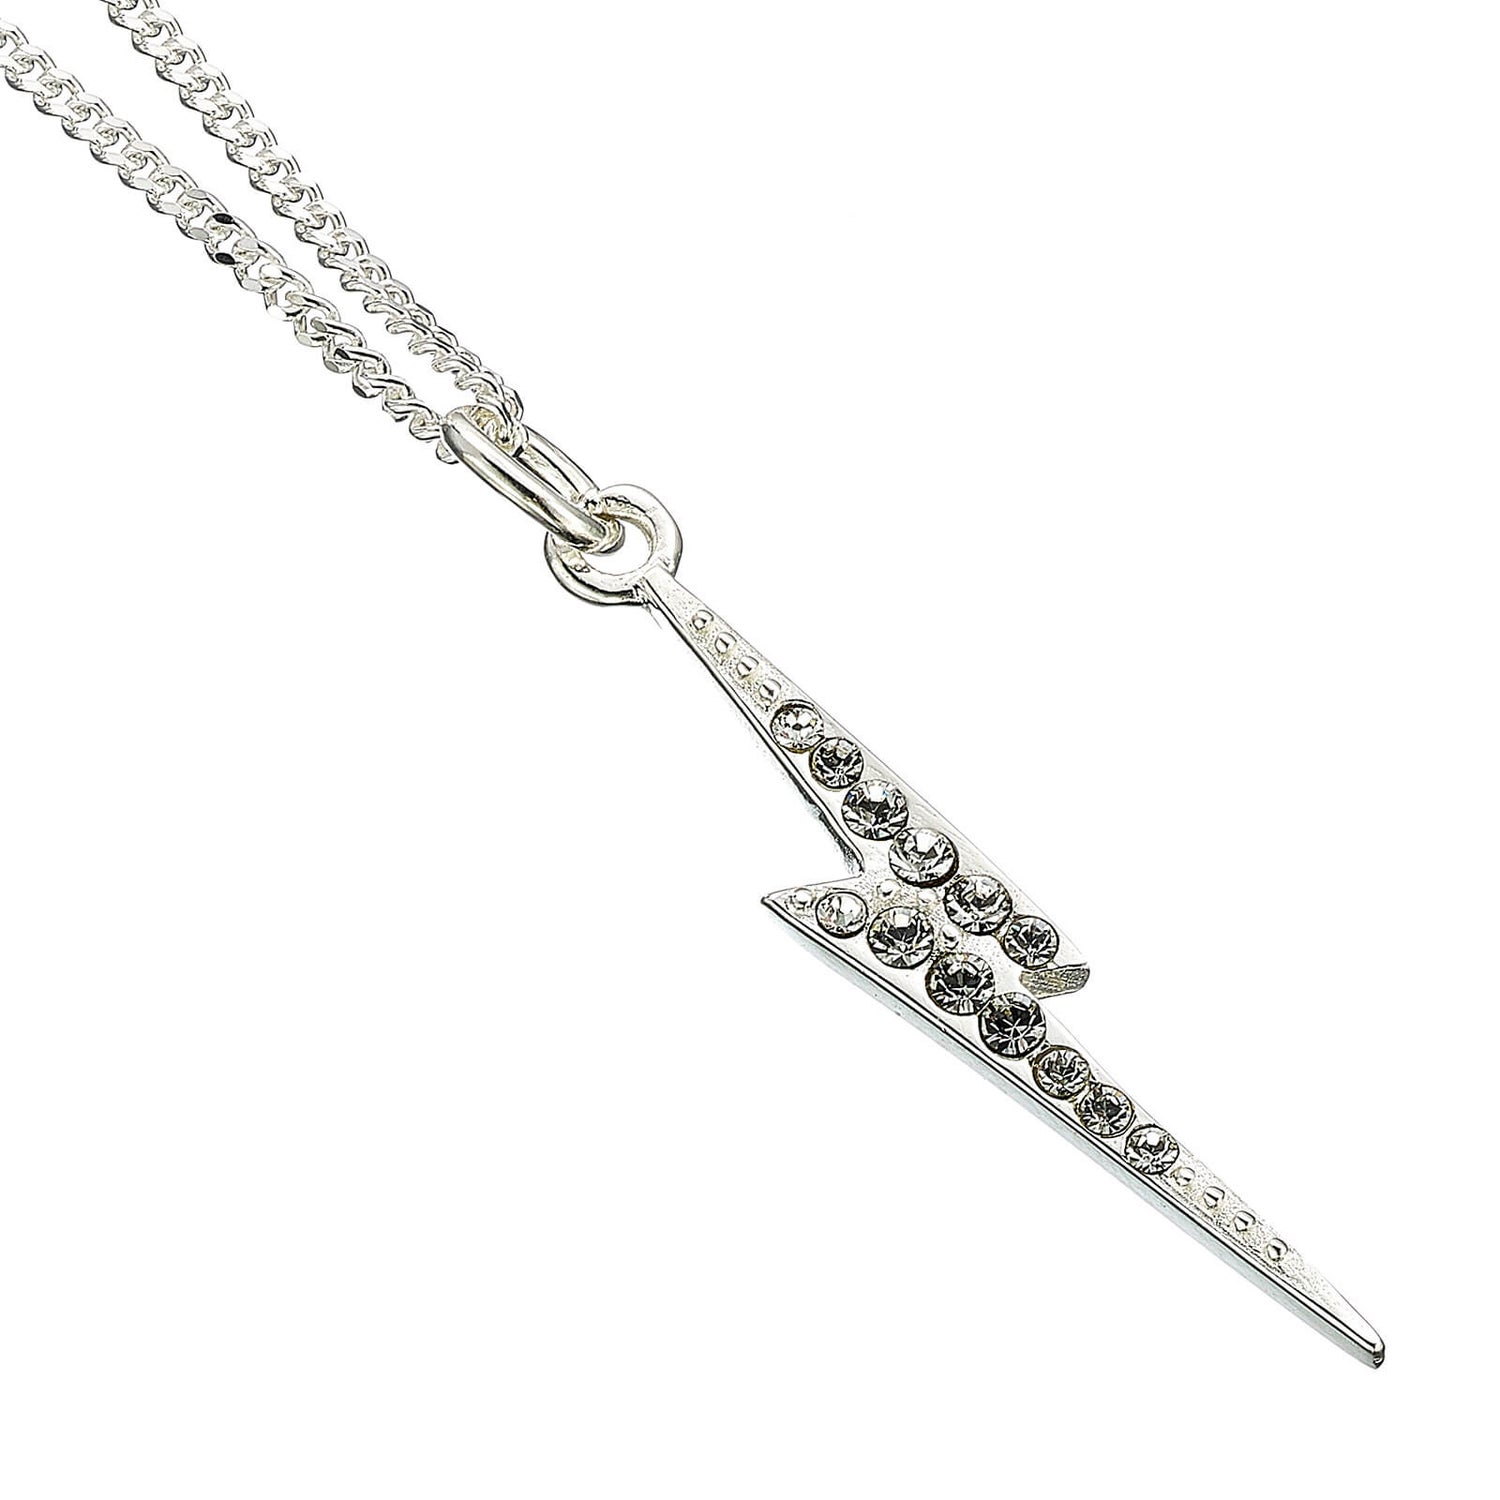 Harry Potter Lightning Bolt Scar Necklace Embellished with Crystals - Silver